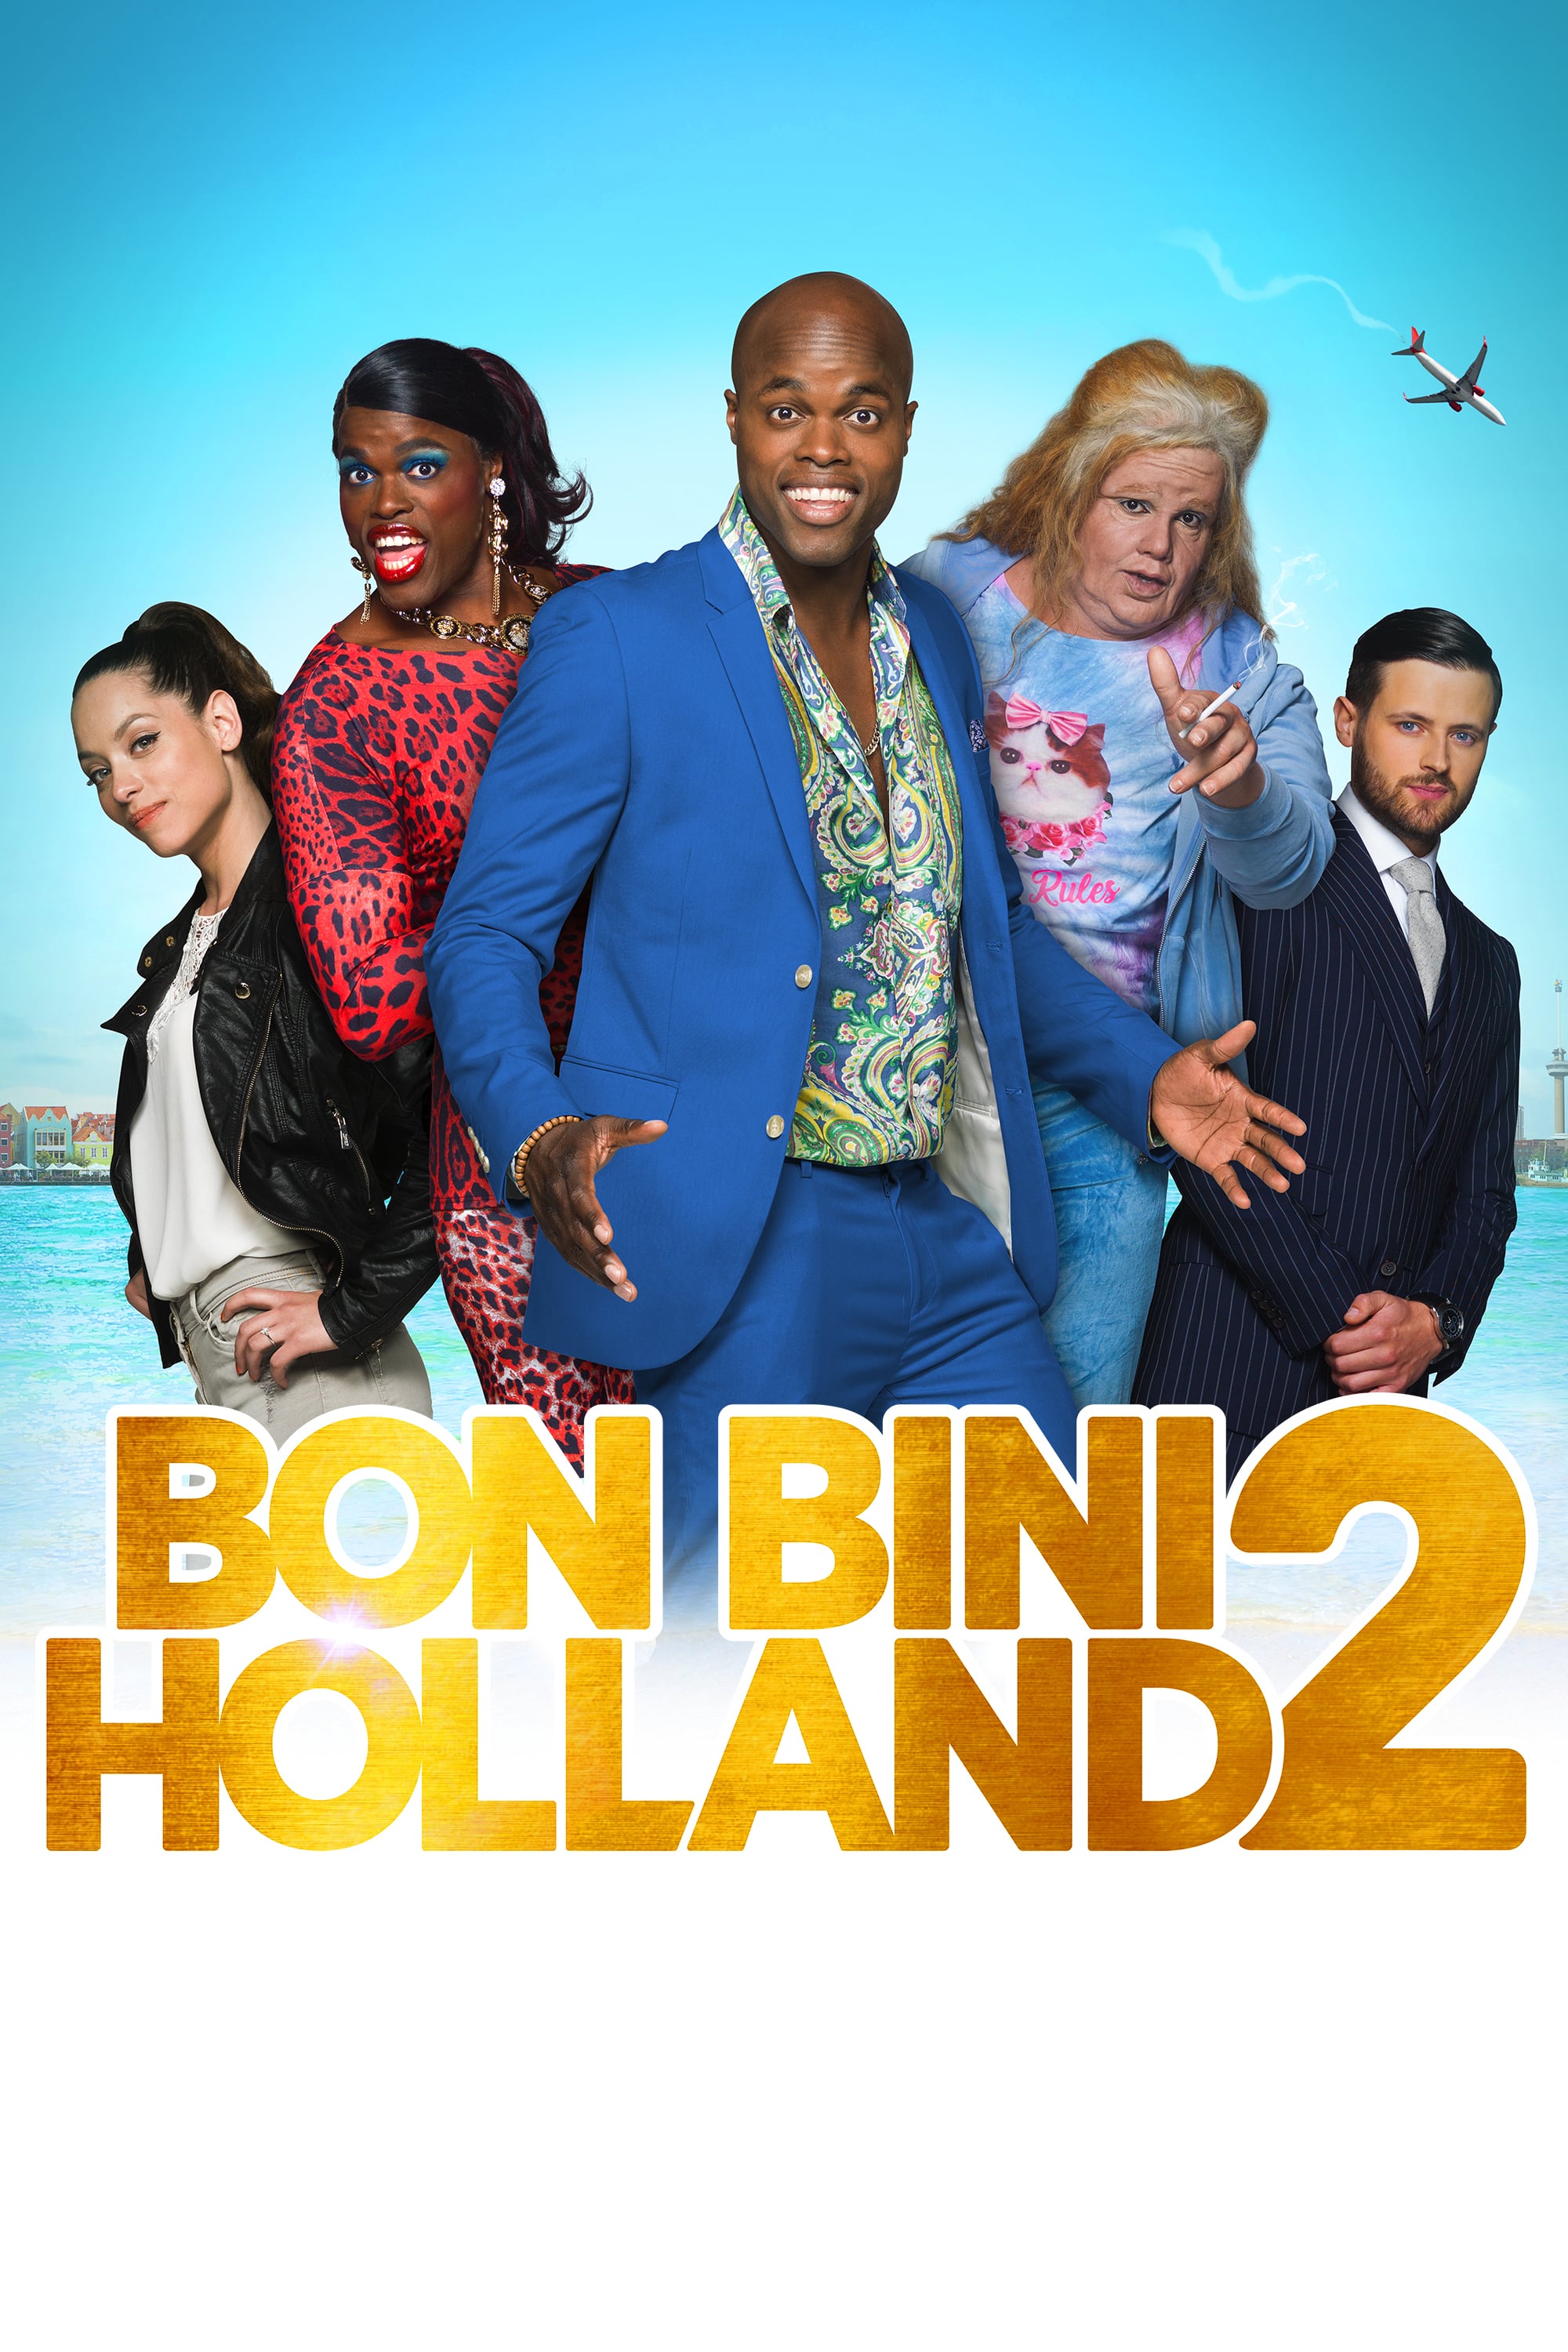 Bon Bini Holland 2 (2018) Main Poster